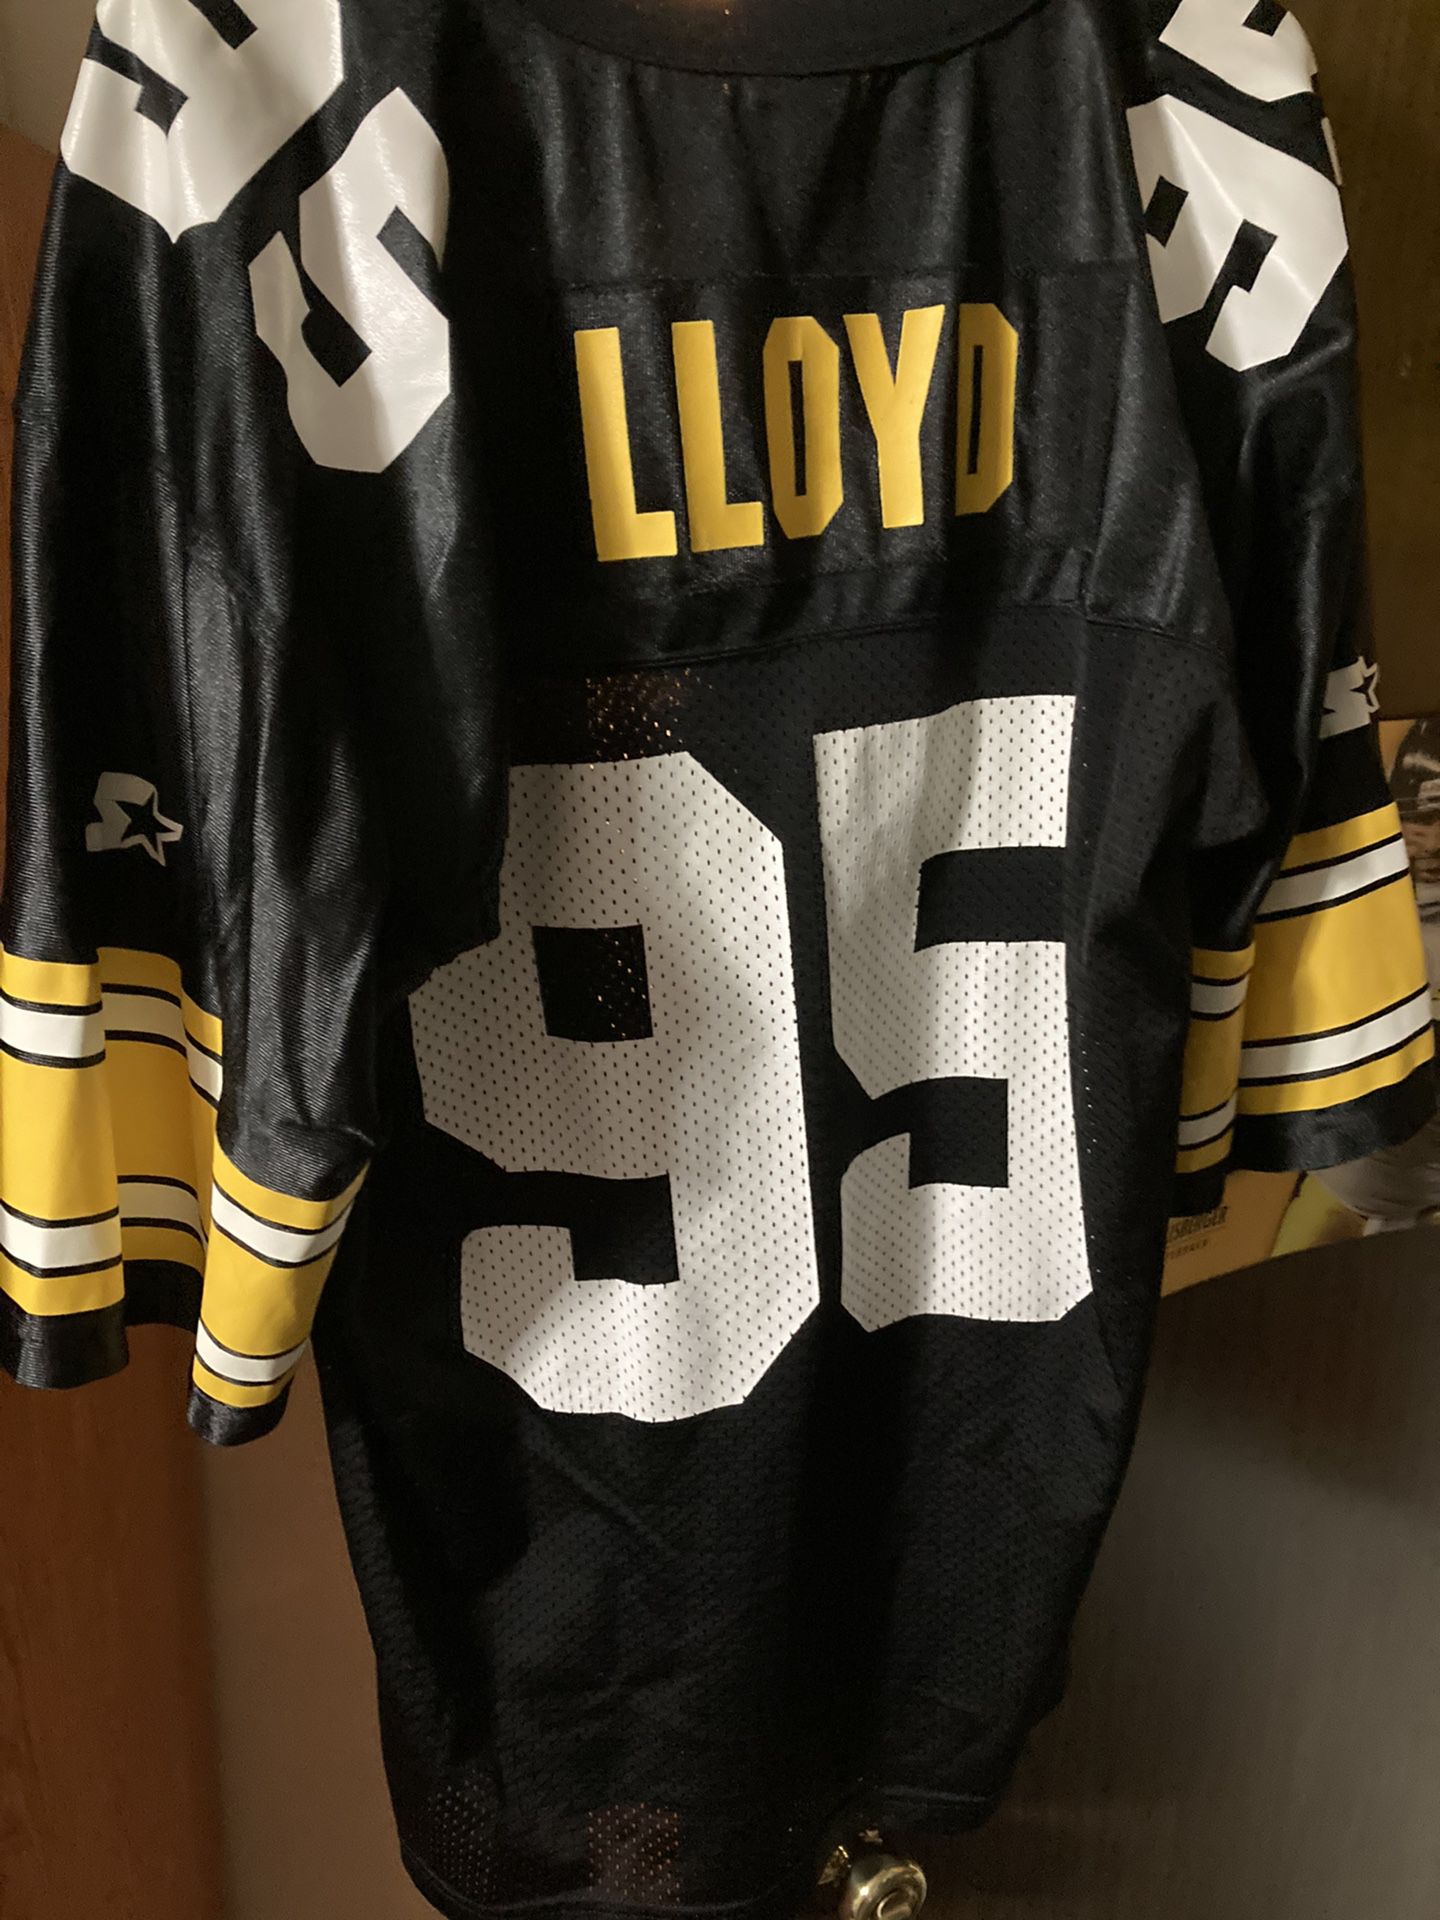 Lloyd Steeler jersey